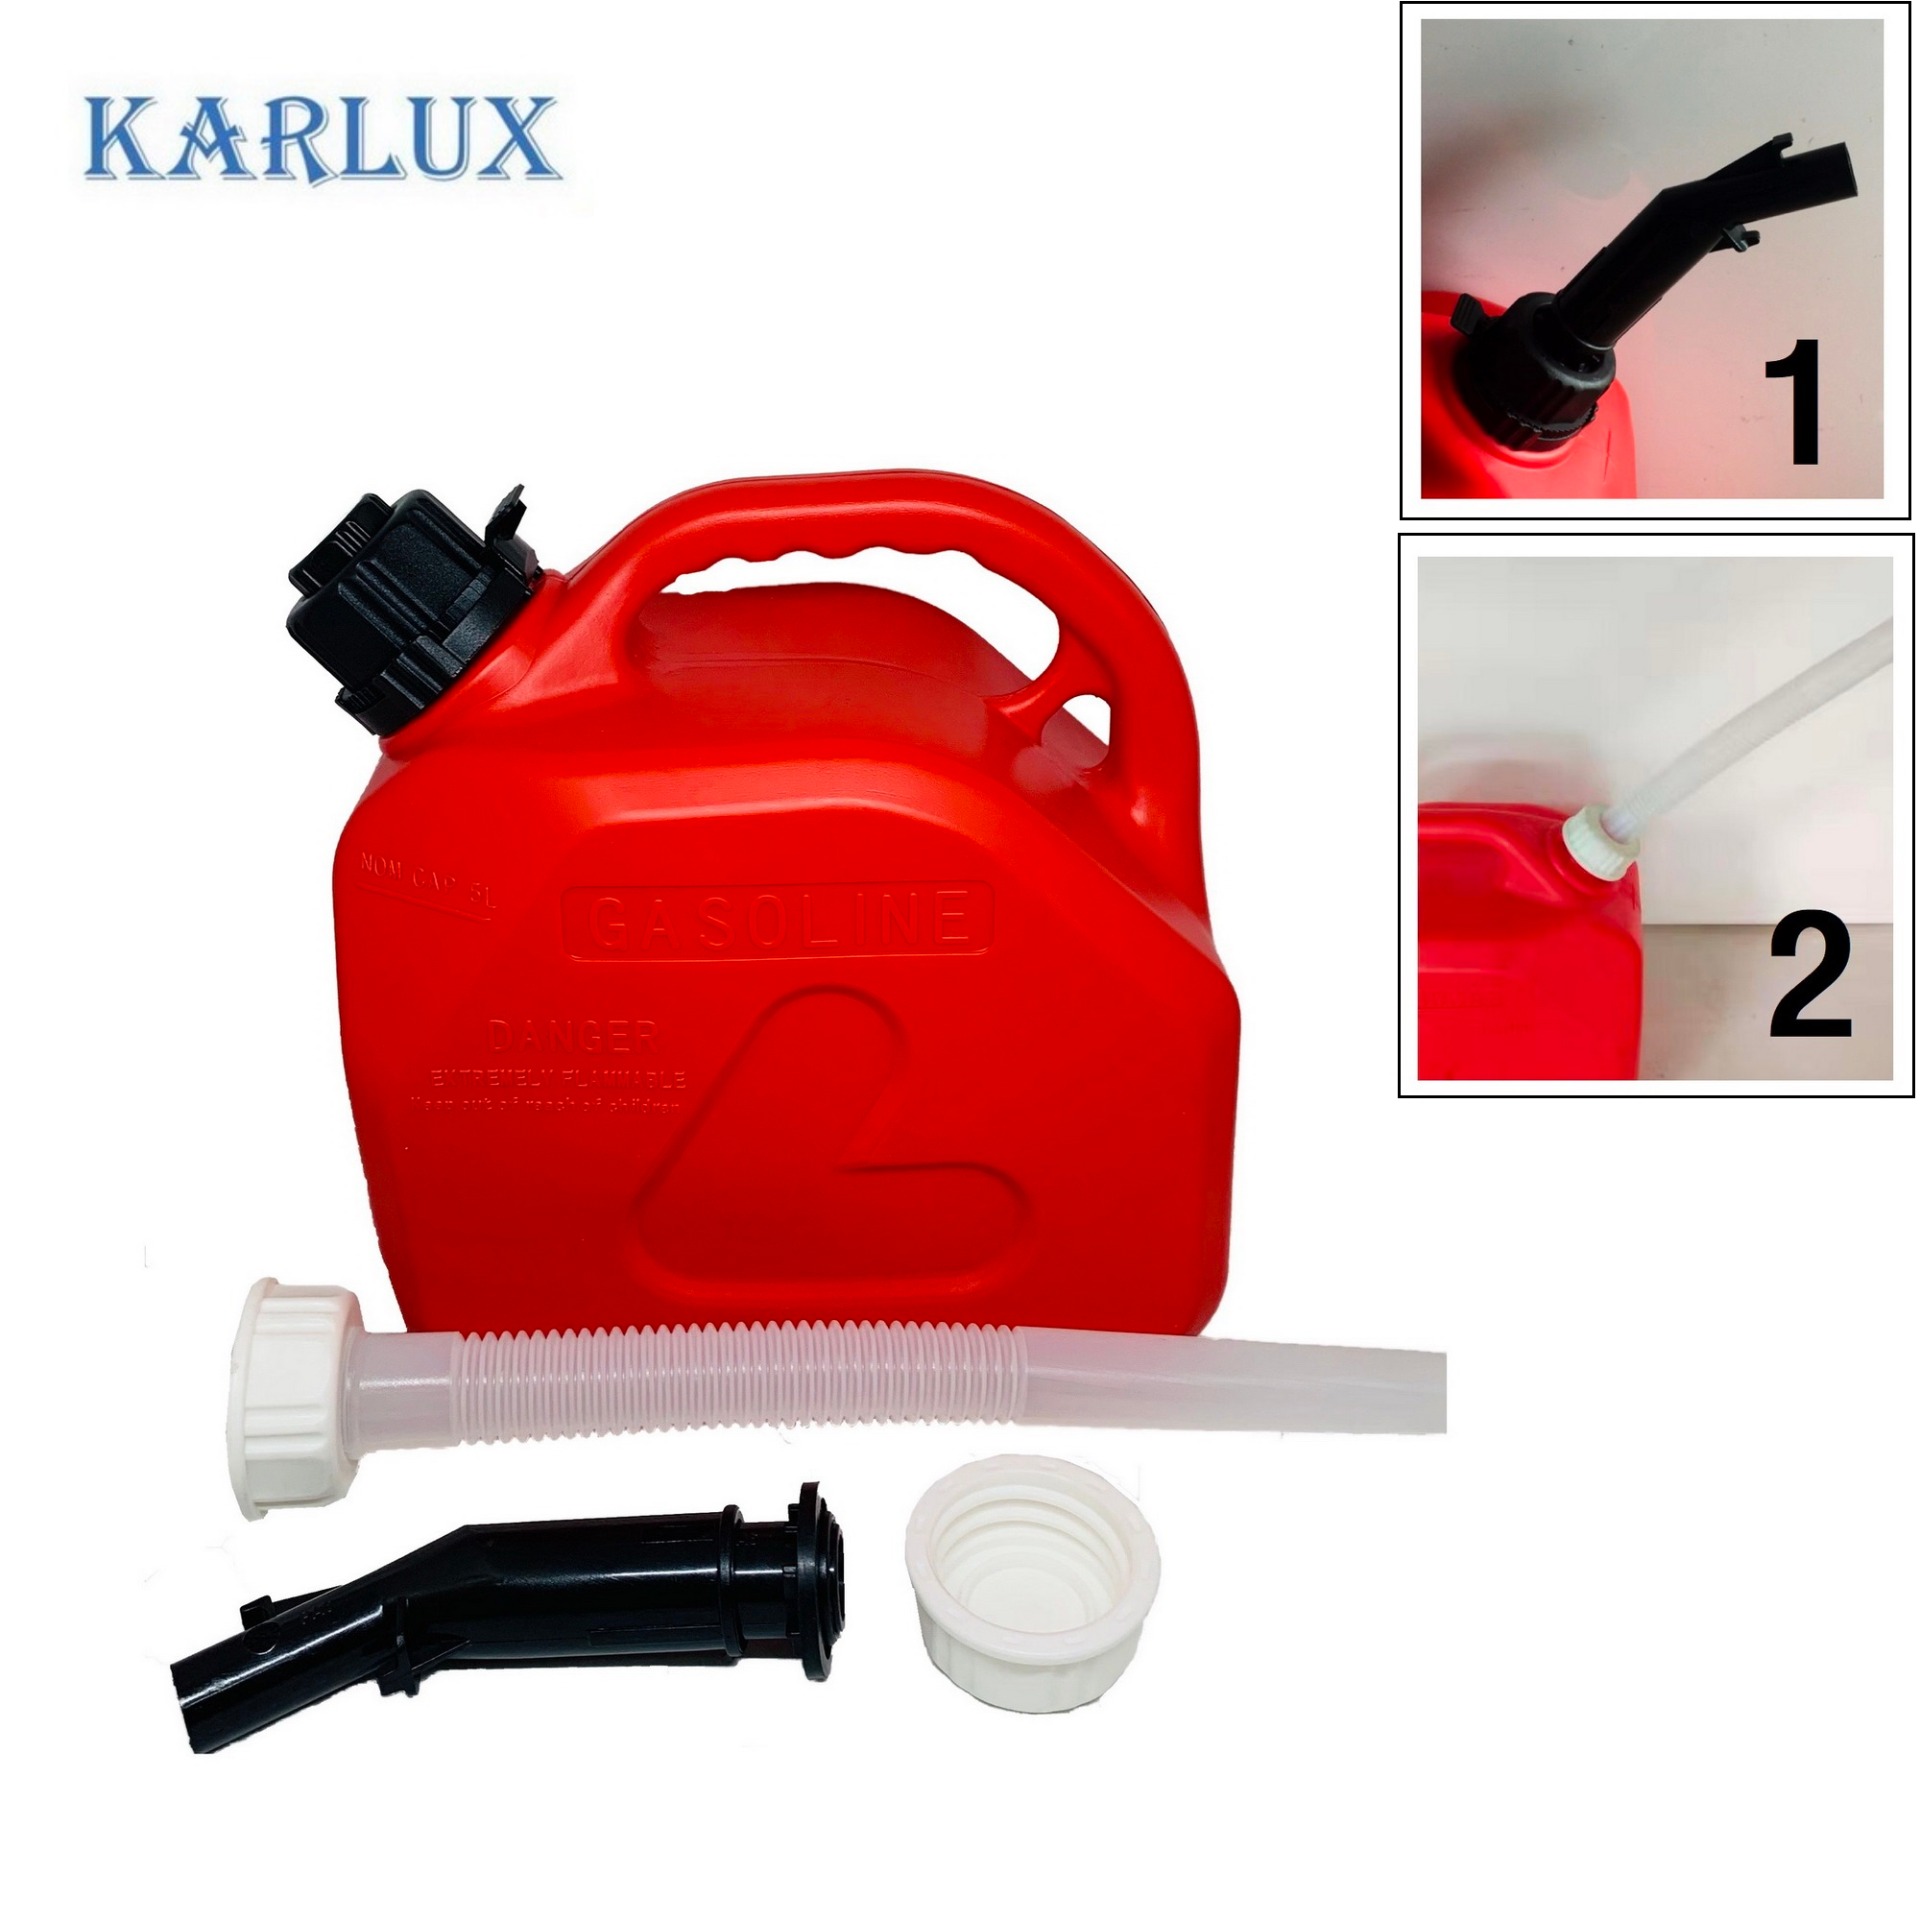 Karlux ถังแกลลอนเก็บน้ำมันสำรอง 5 ลิตร พร้อมหัวเติม 2 อัน Fuel Tank  (หัวเติม แบบกด และ แบบเท)